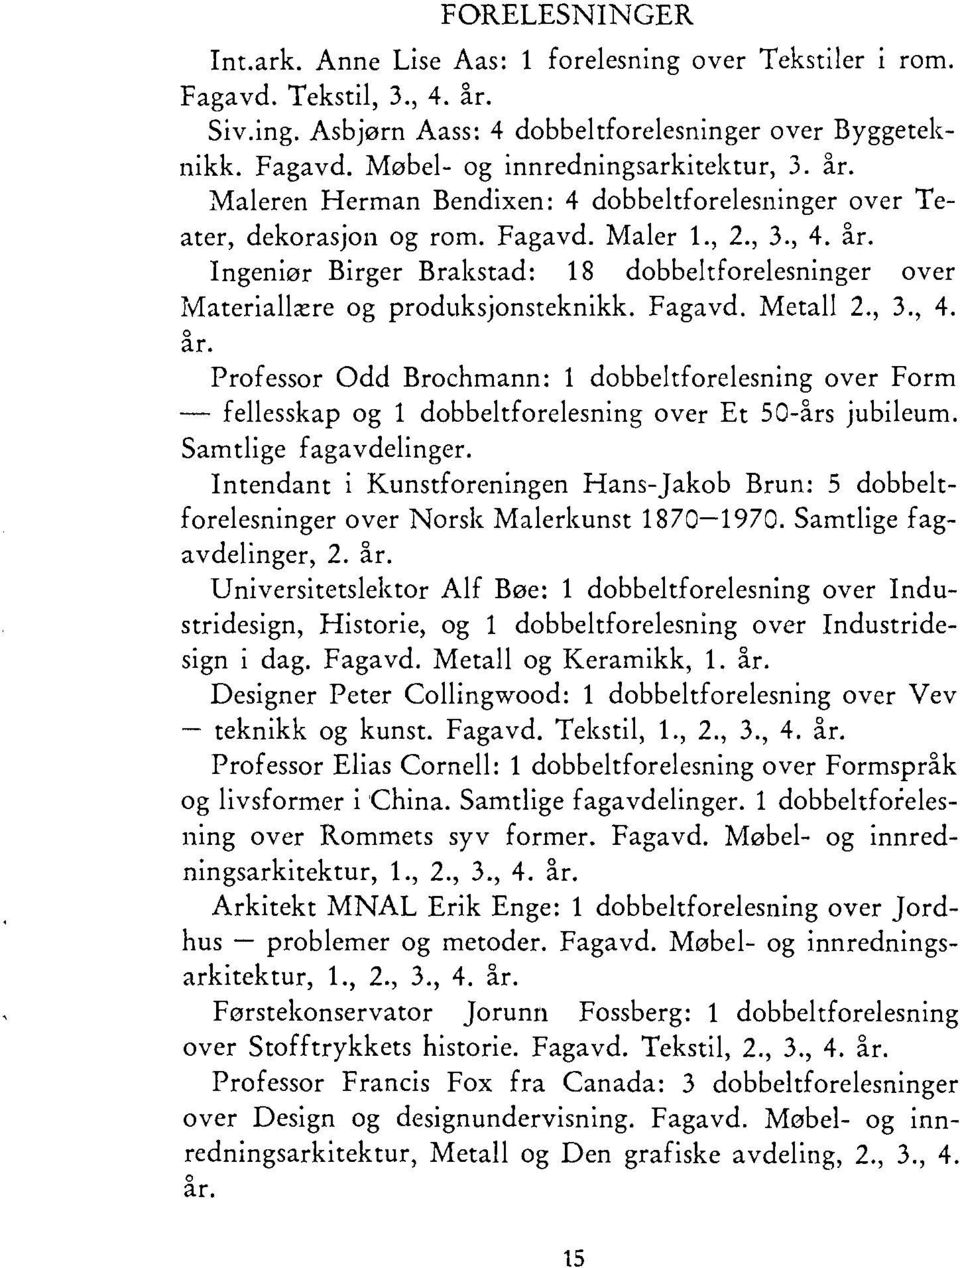 Ingeniør Birger Brakstad: 18 dobbeltforelesninger over Materiallære og produksjonsteknikk. Fagavd. Metall 2., 3., 4. år.